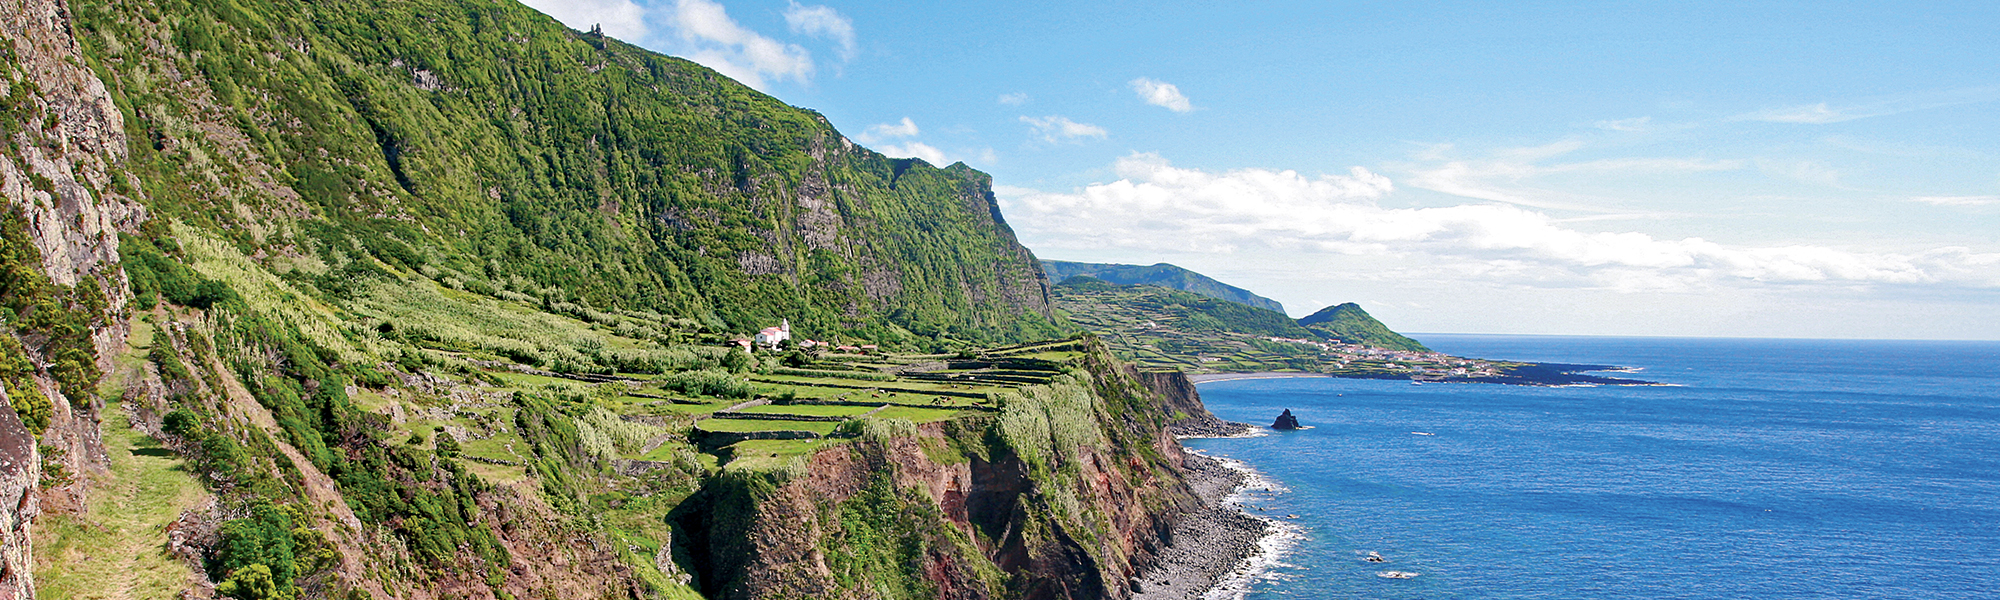 Navigation Açores © Veracor - Turismo de Acores